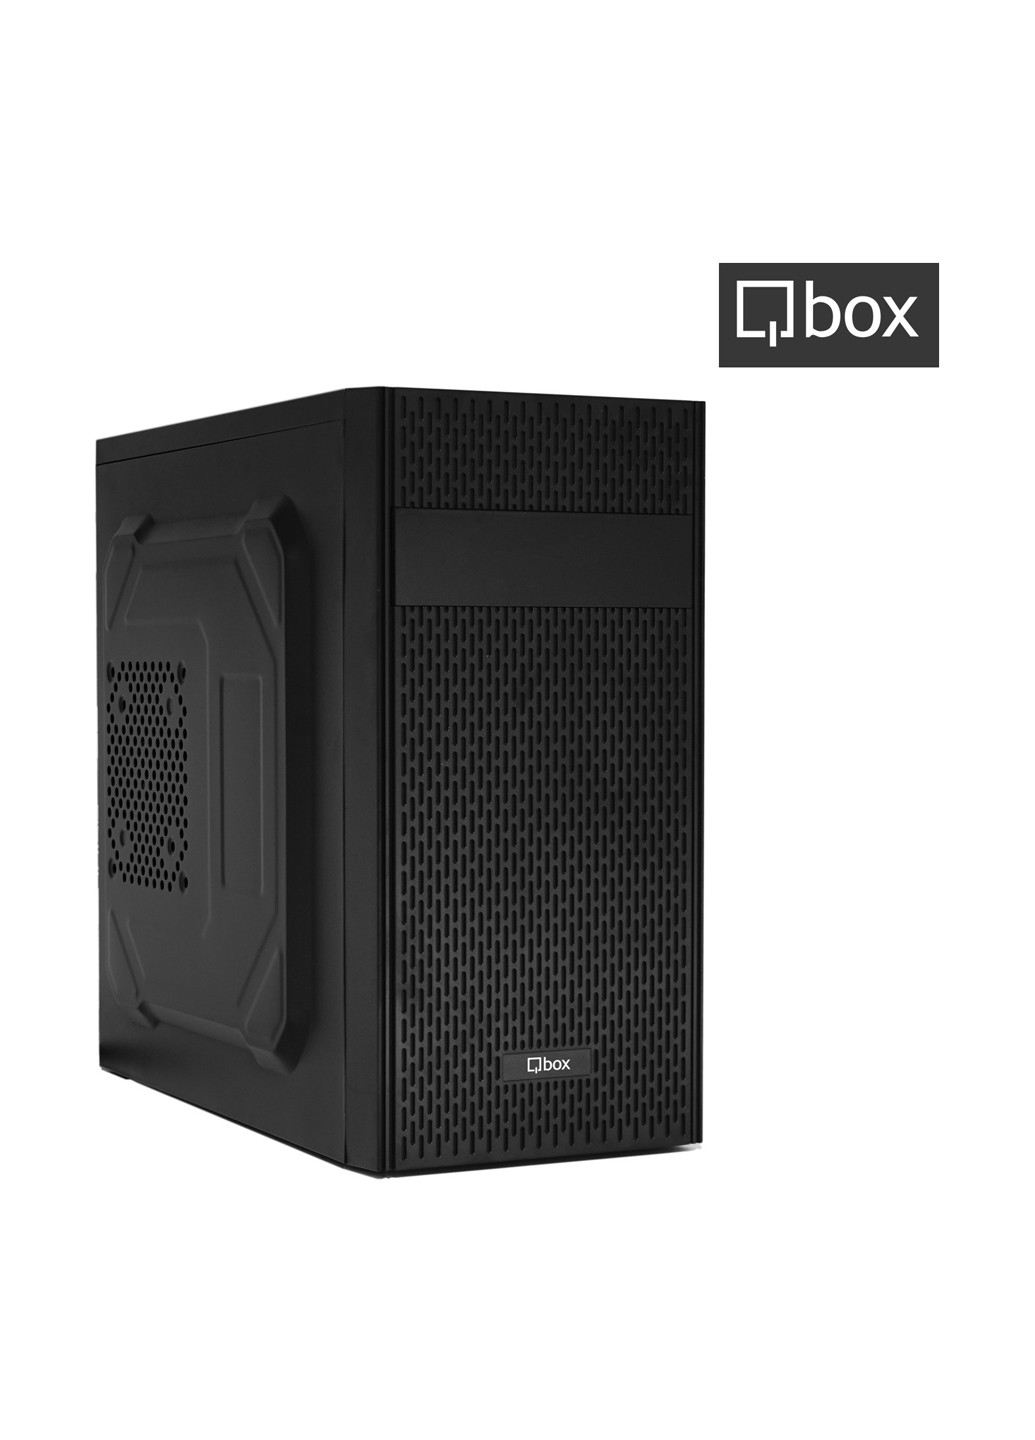 Компьютер A2467 Qbox qbox a2467 (131396739)